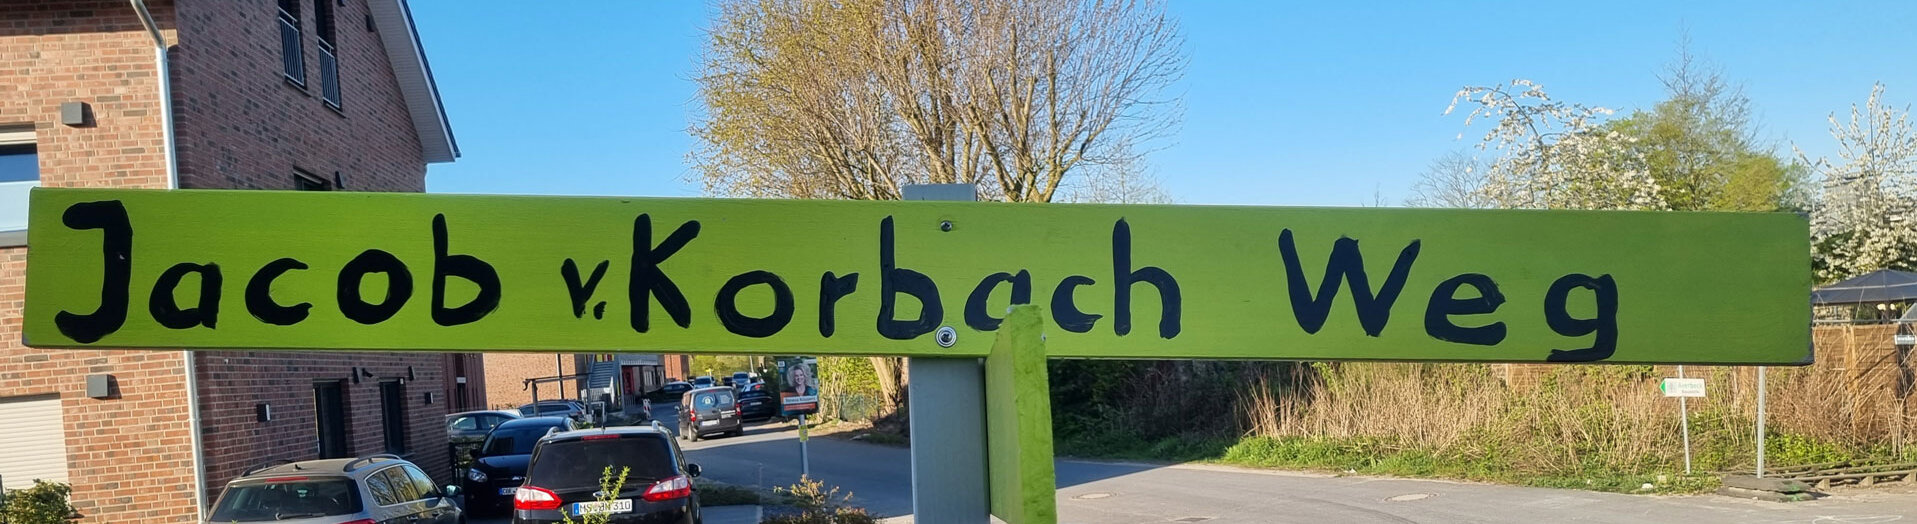 Provisorisches Straßenschild (April 2022) am Jacob-von-Korbach-Weg im Neubaugebiet in Münster-Wolbeck